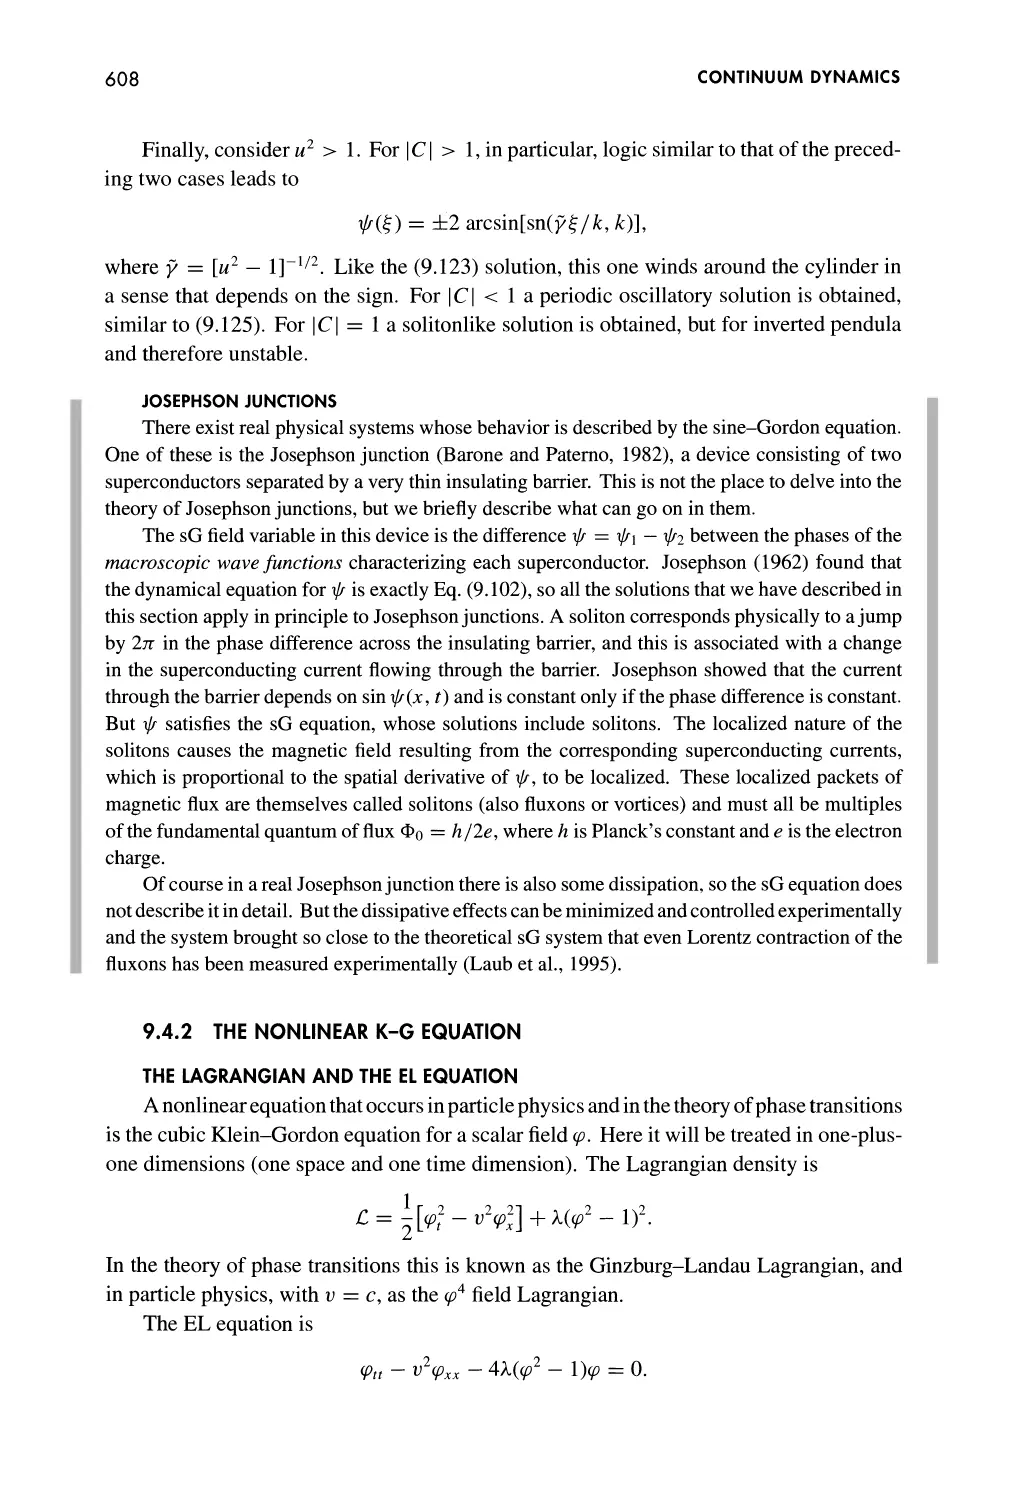 Josephson Junctions
9.4.2 The Nonlinear K-G Equation